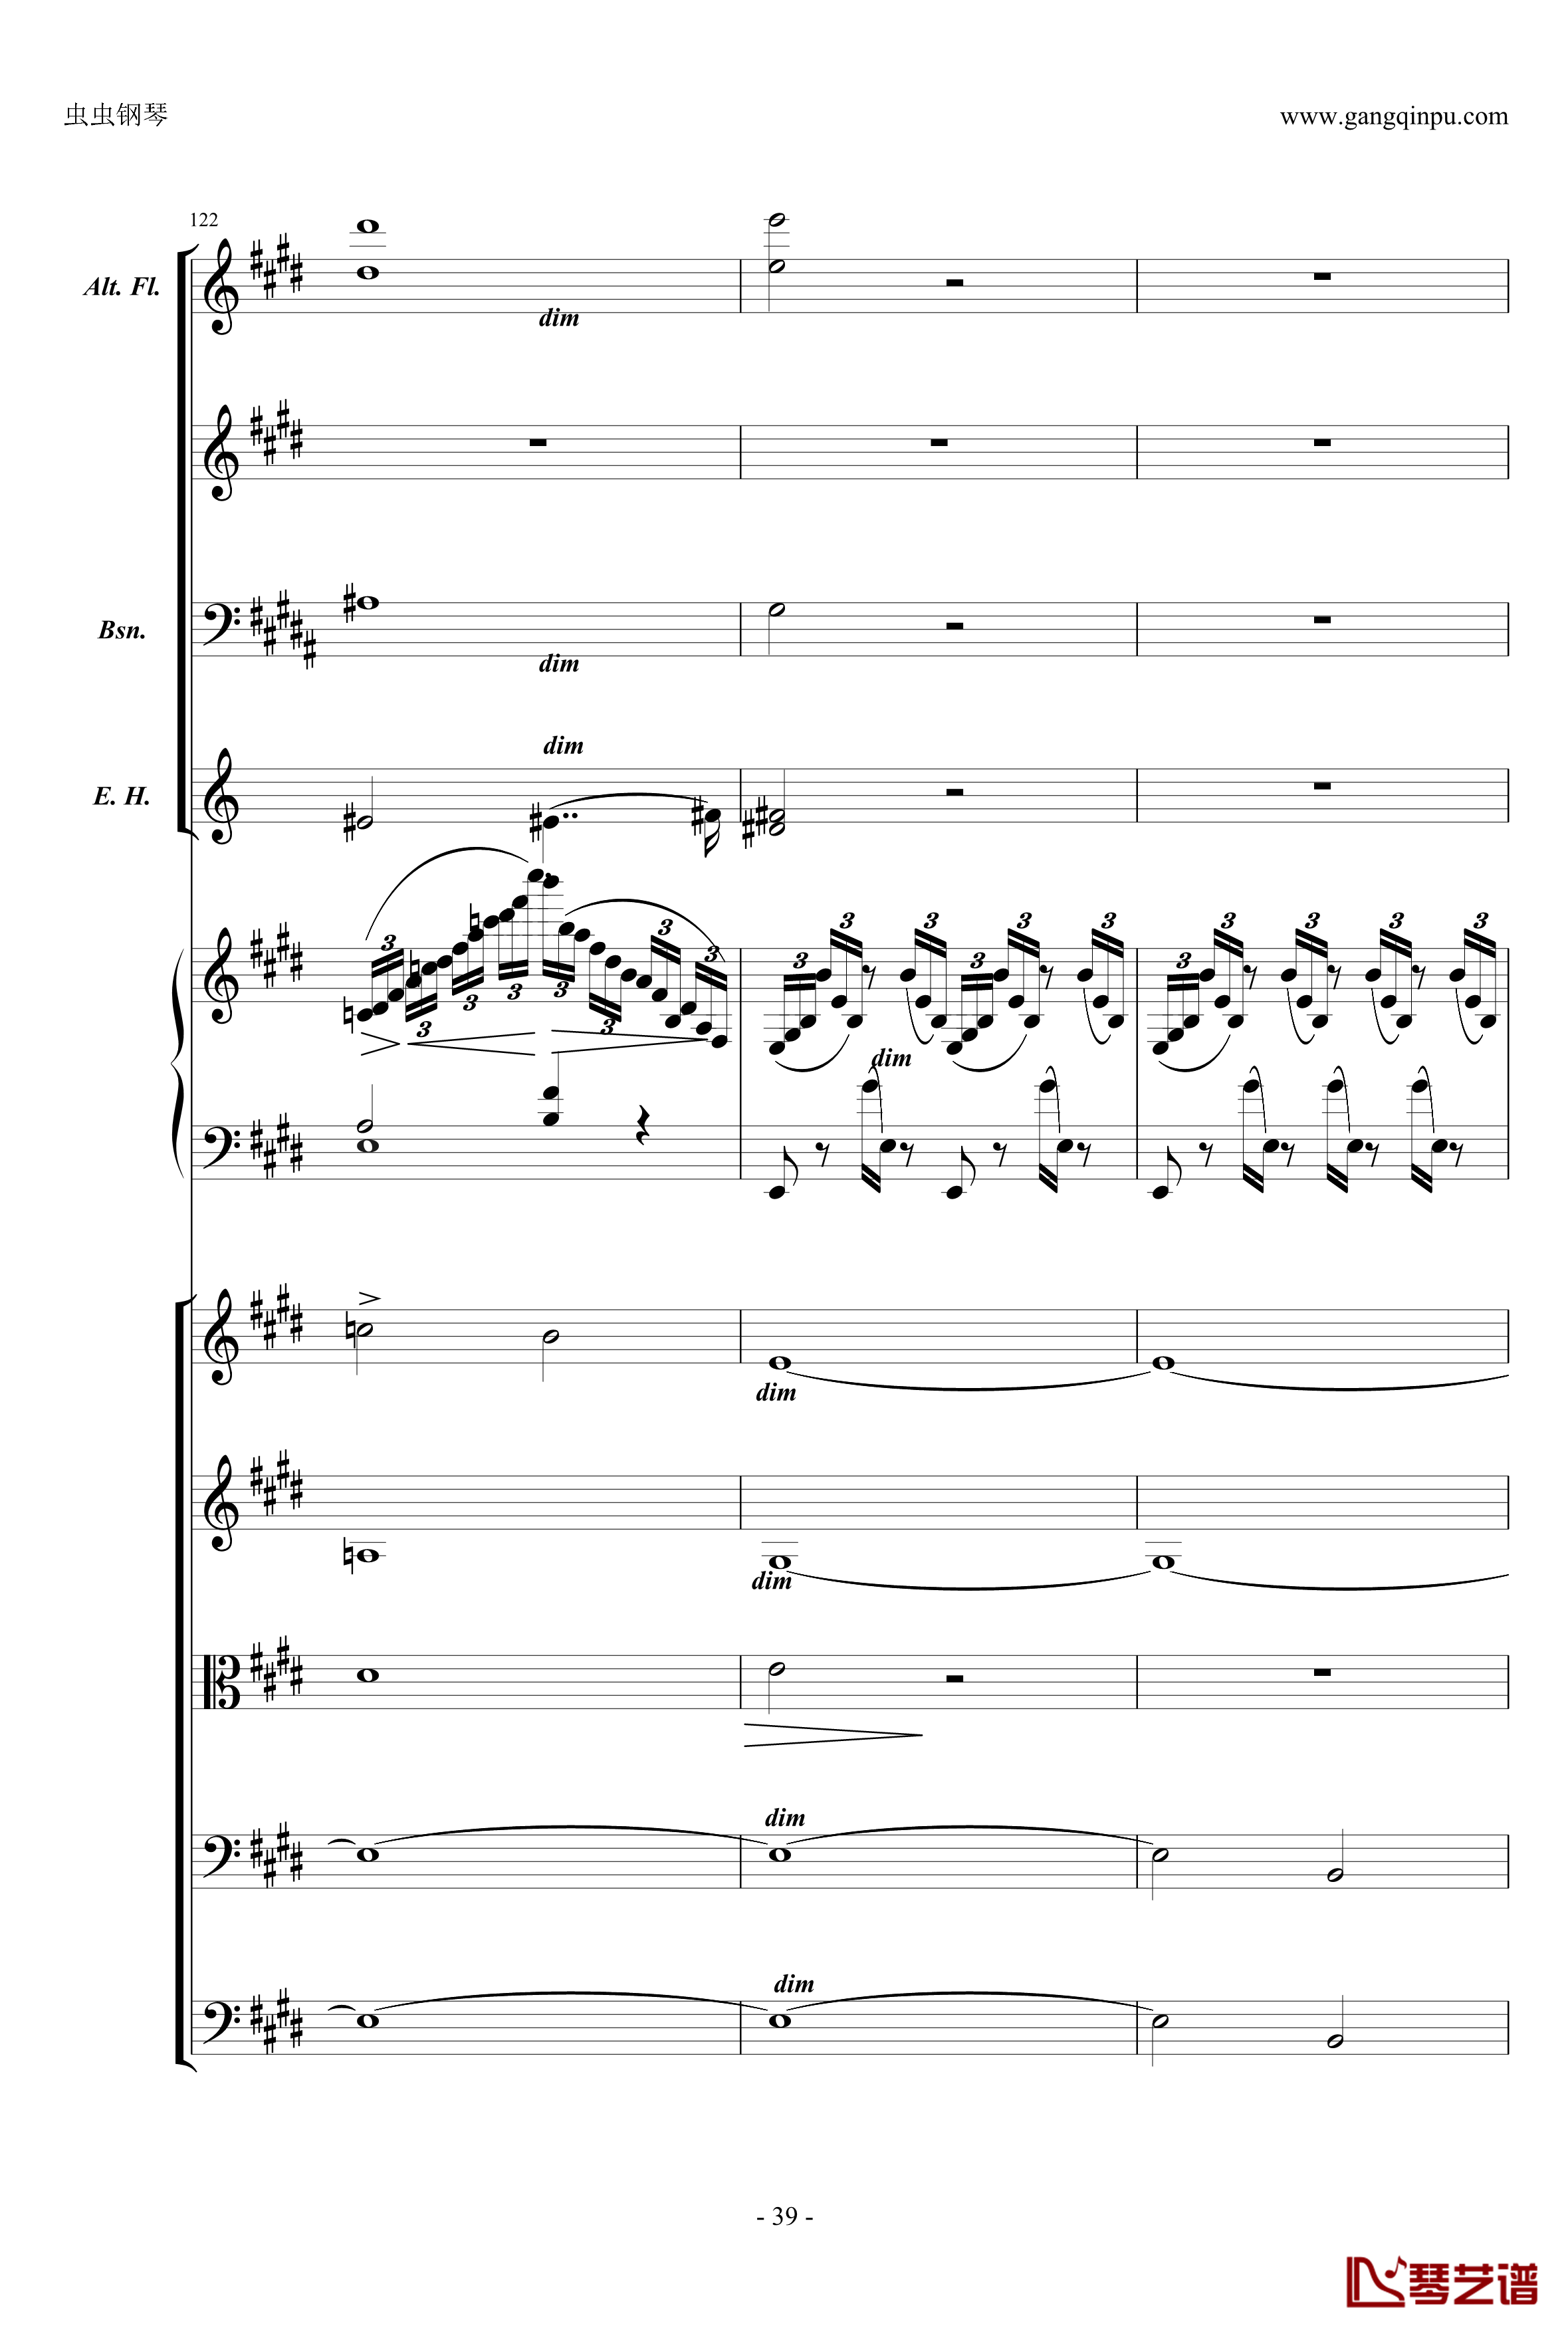 萧邦第一钢琴协奏曲第二乐章钢琴谱-肖邦-chopin39